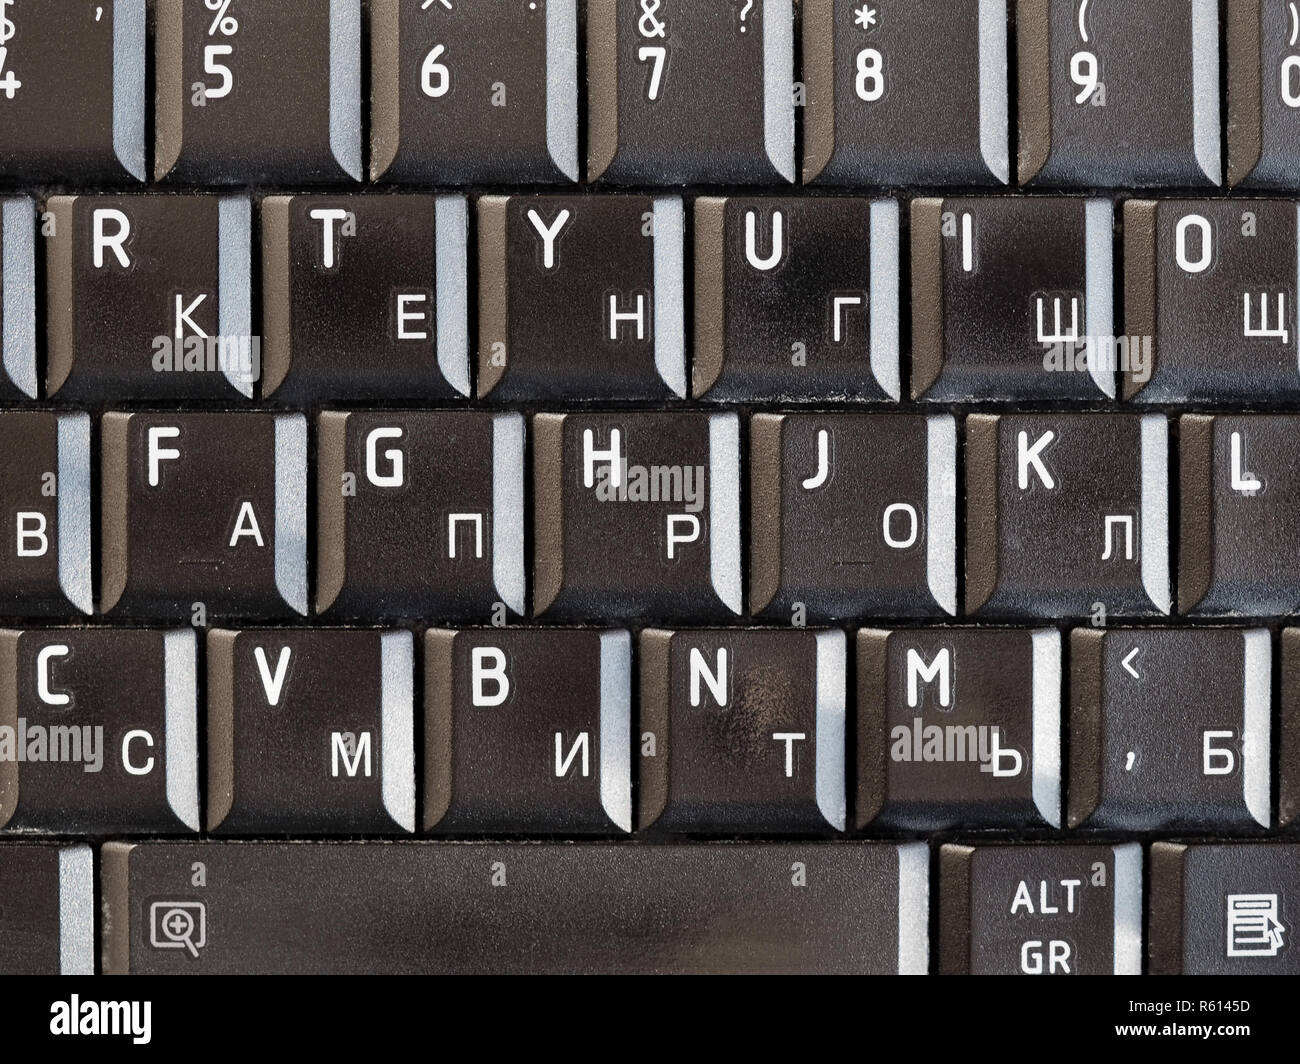 Russisch und Englisch Tastatur mit kyrillische und lateinische Schrift  Stockfotografie - Alamy